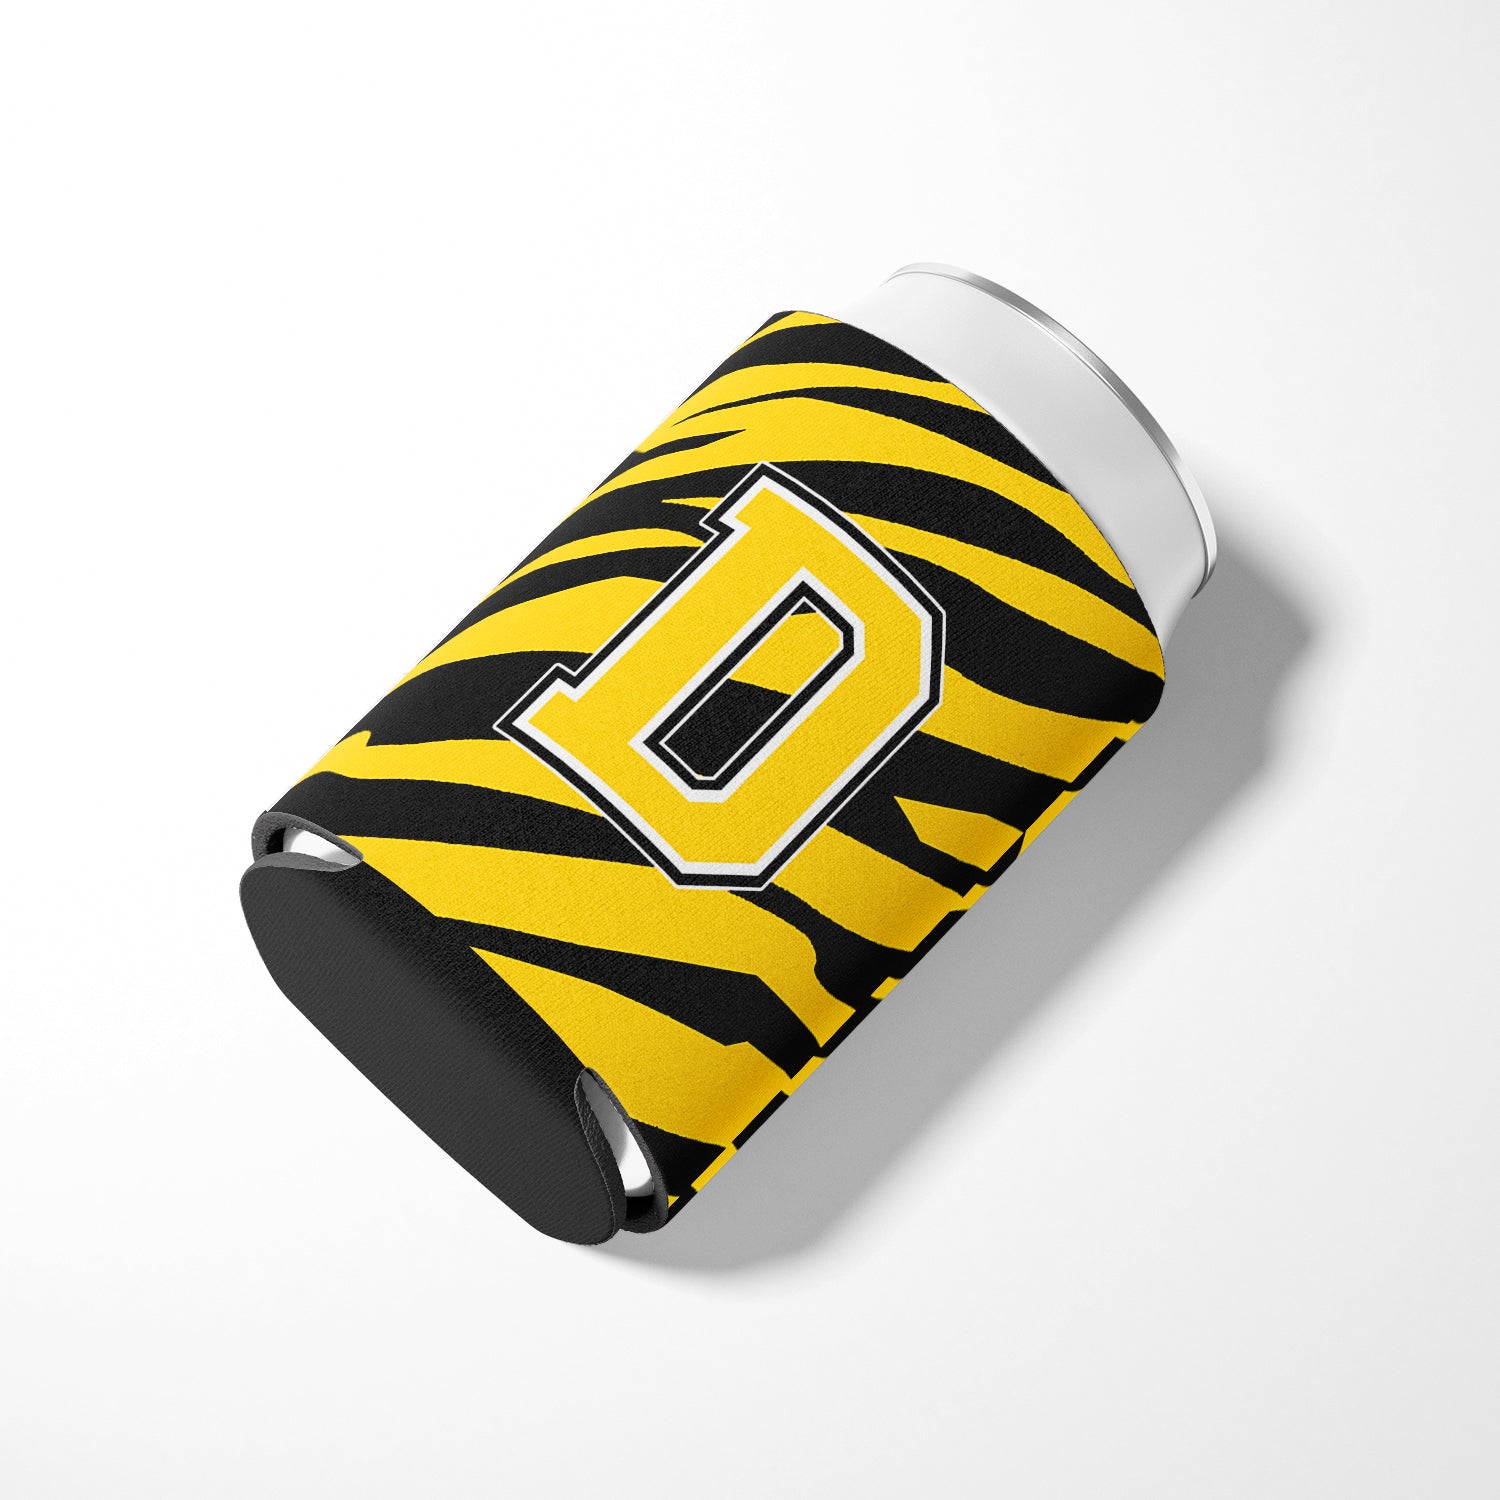 Letter D Initial Monogram - Tiger Stripe - Black Gold Can Beverage Insulator Hugger